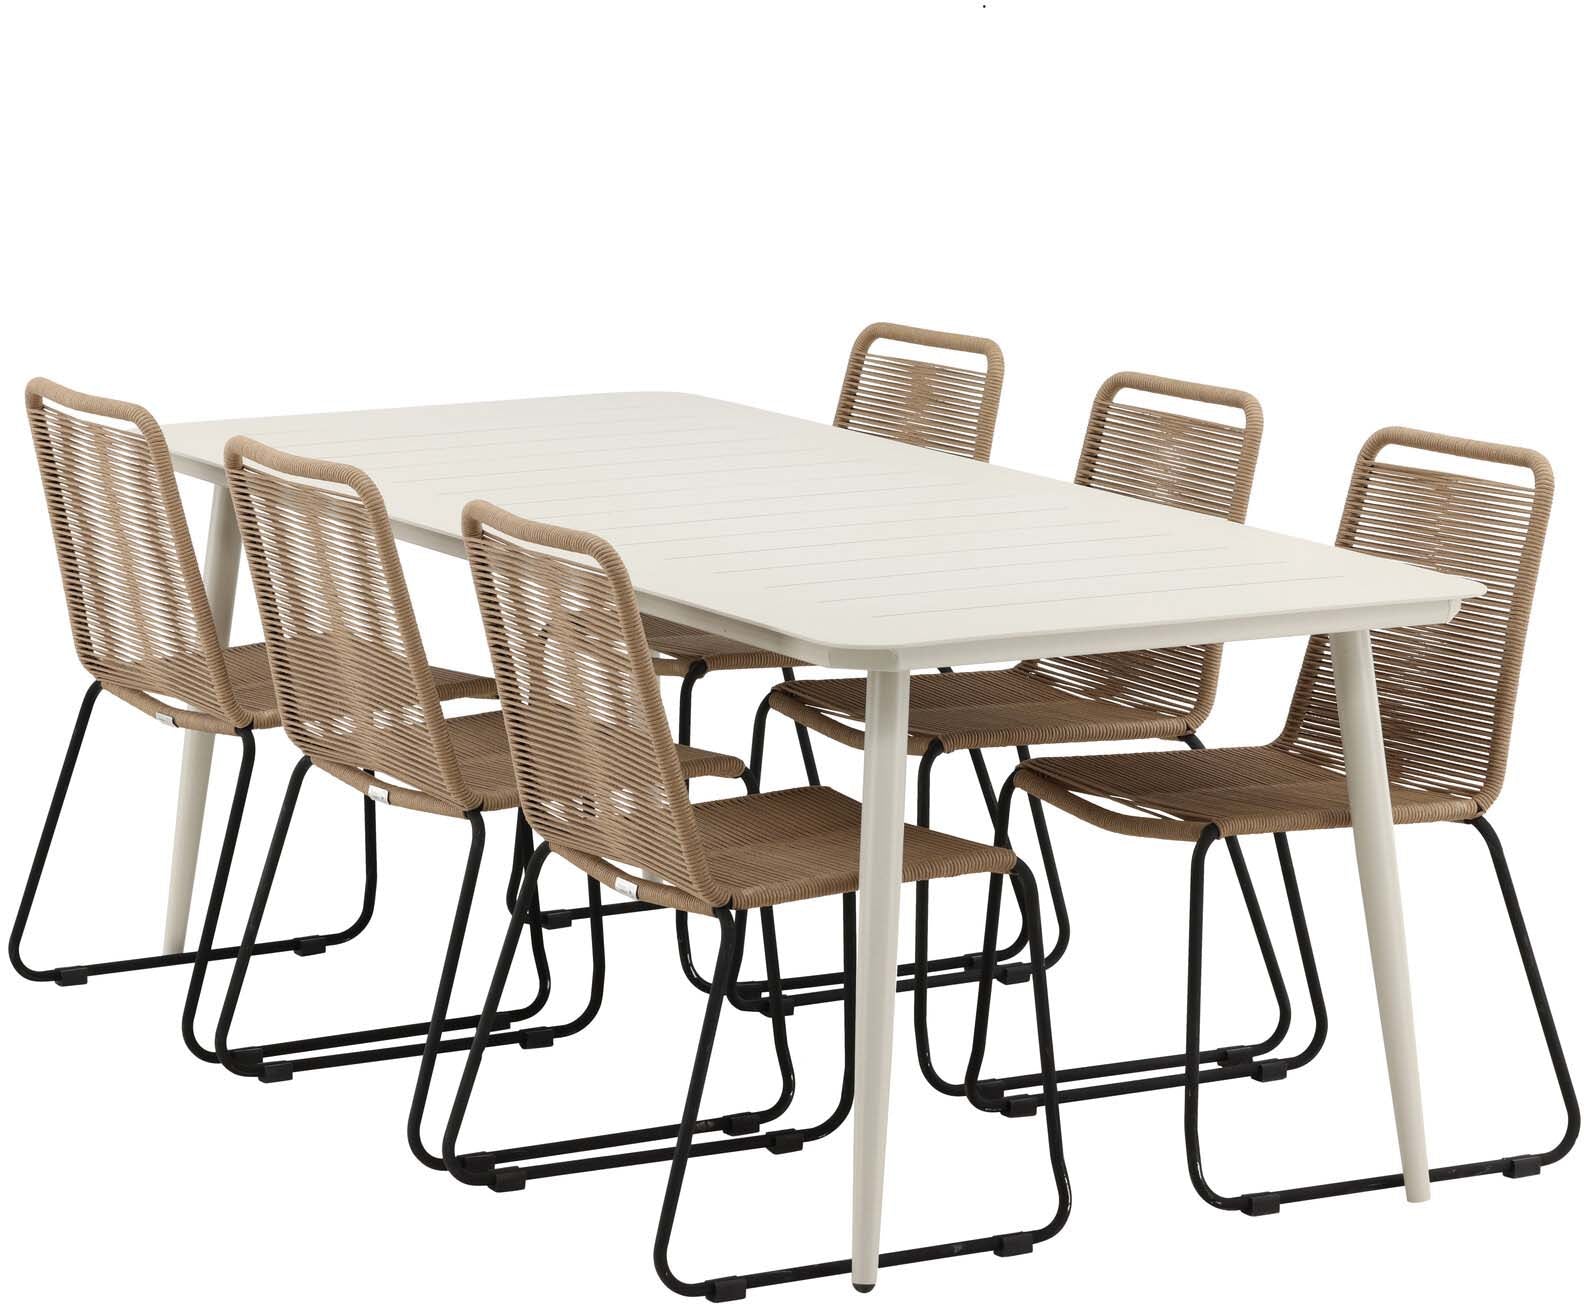 Lina Outdoor-Tischset + Lindos 200cm/6St. in Schwarz Braun präsentiert im Onlineshop von KAQTU Design AG. Gartentischset ist von Venture Home